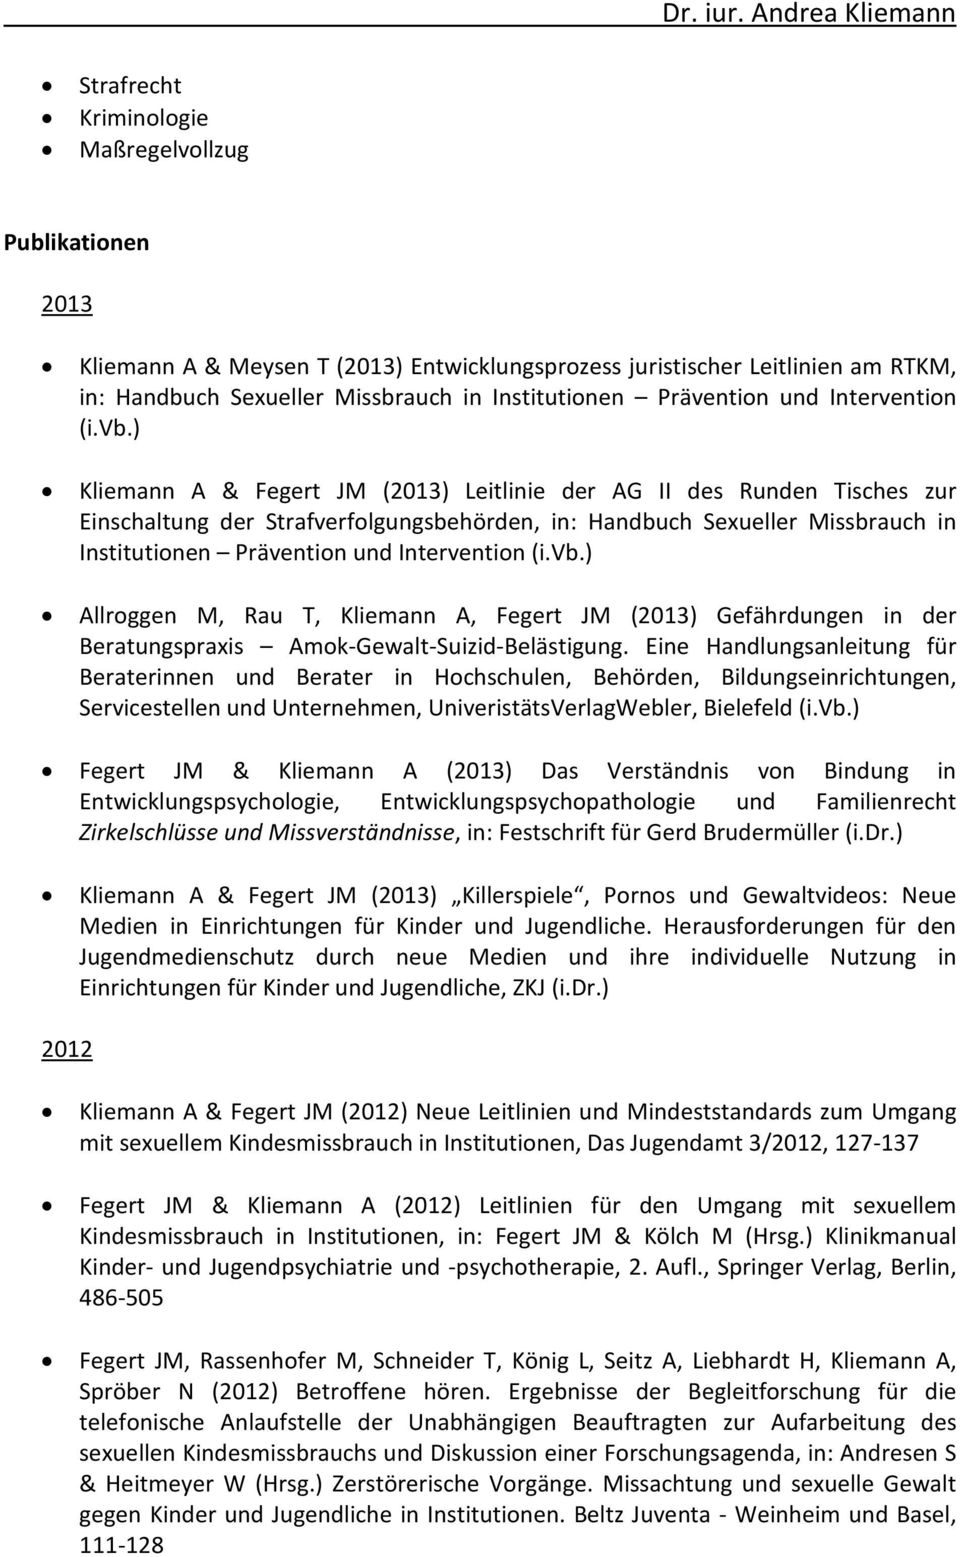 ) Kliemann A & Fegert JM (2013) Leitlinie der AG II des Runden Tisches zur Einschaltung der Strafverfolgungsbehörden, in: Handbuch Sexueller Missbrauch in Institutionen ) Allroggen M, Rau T, Kliemann